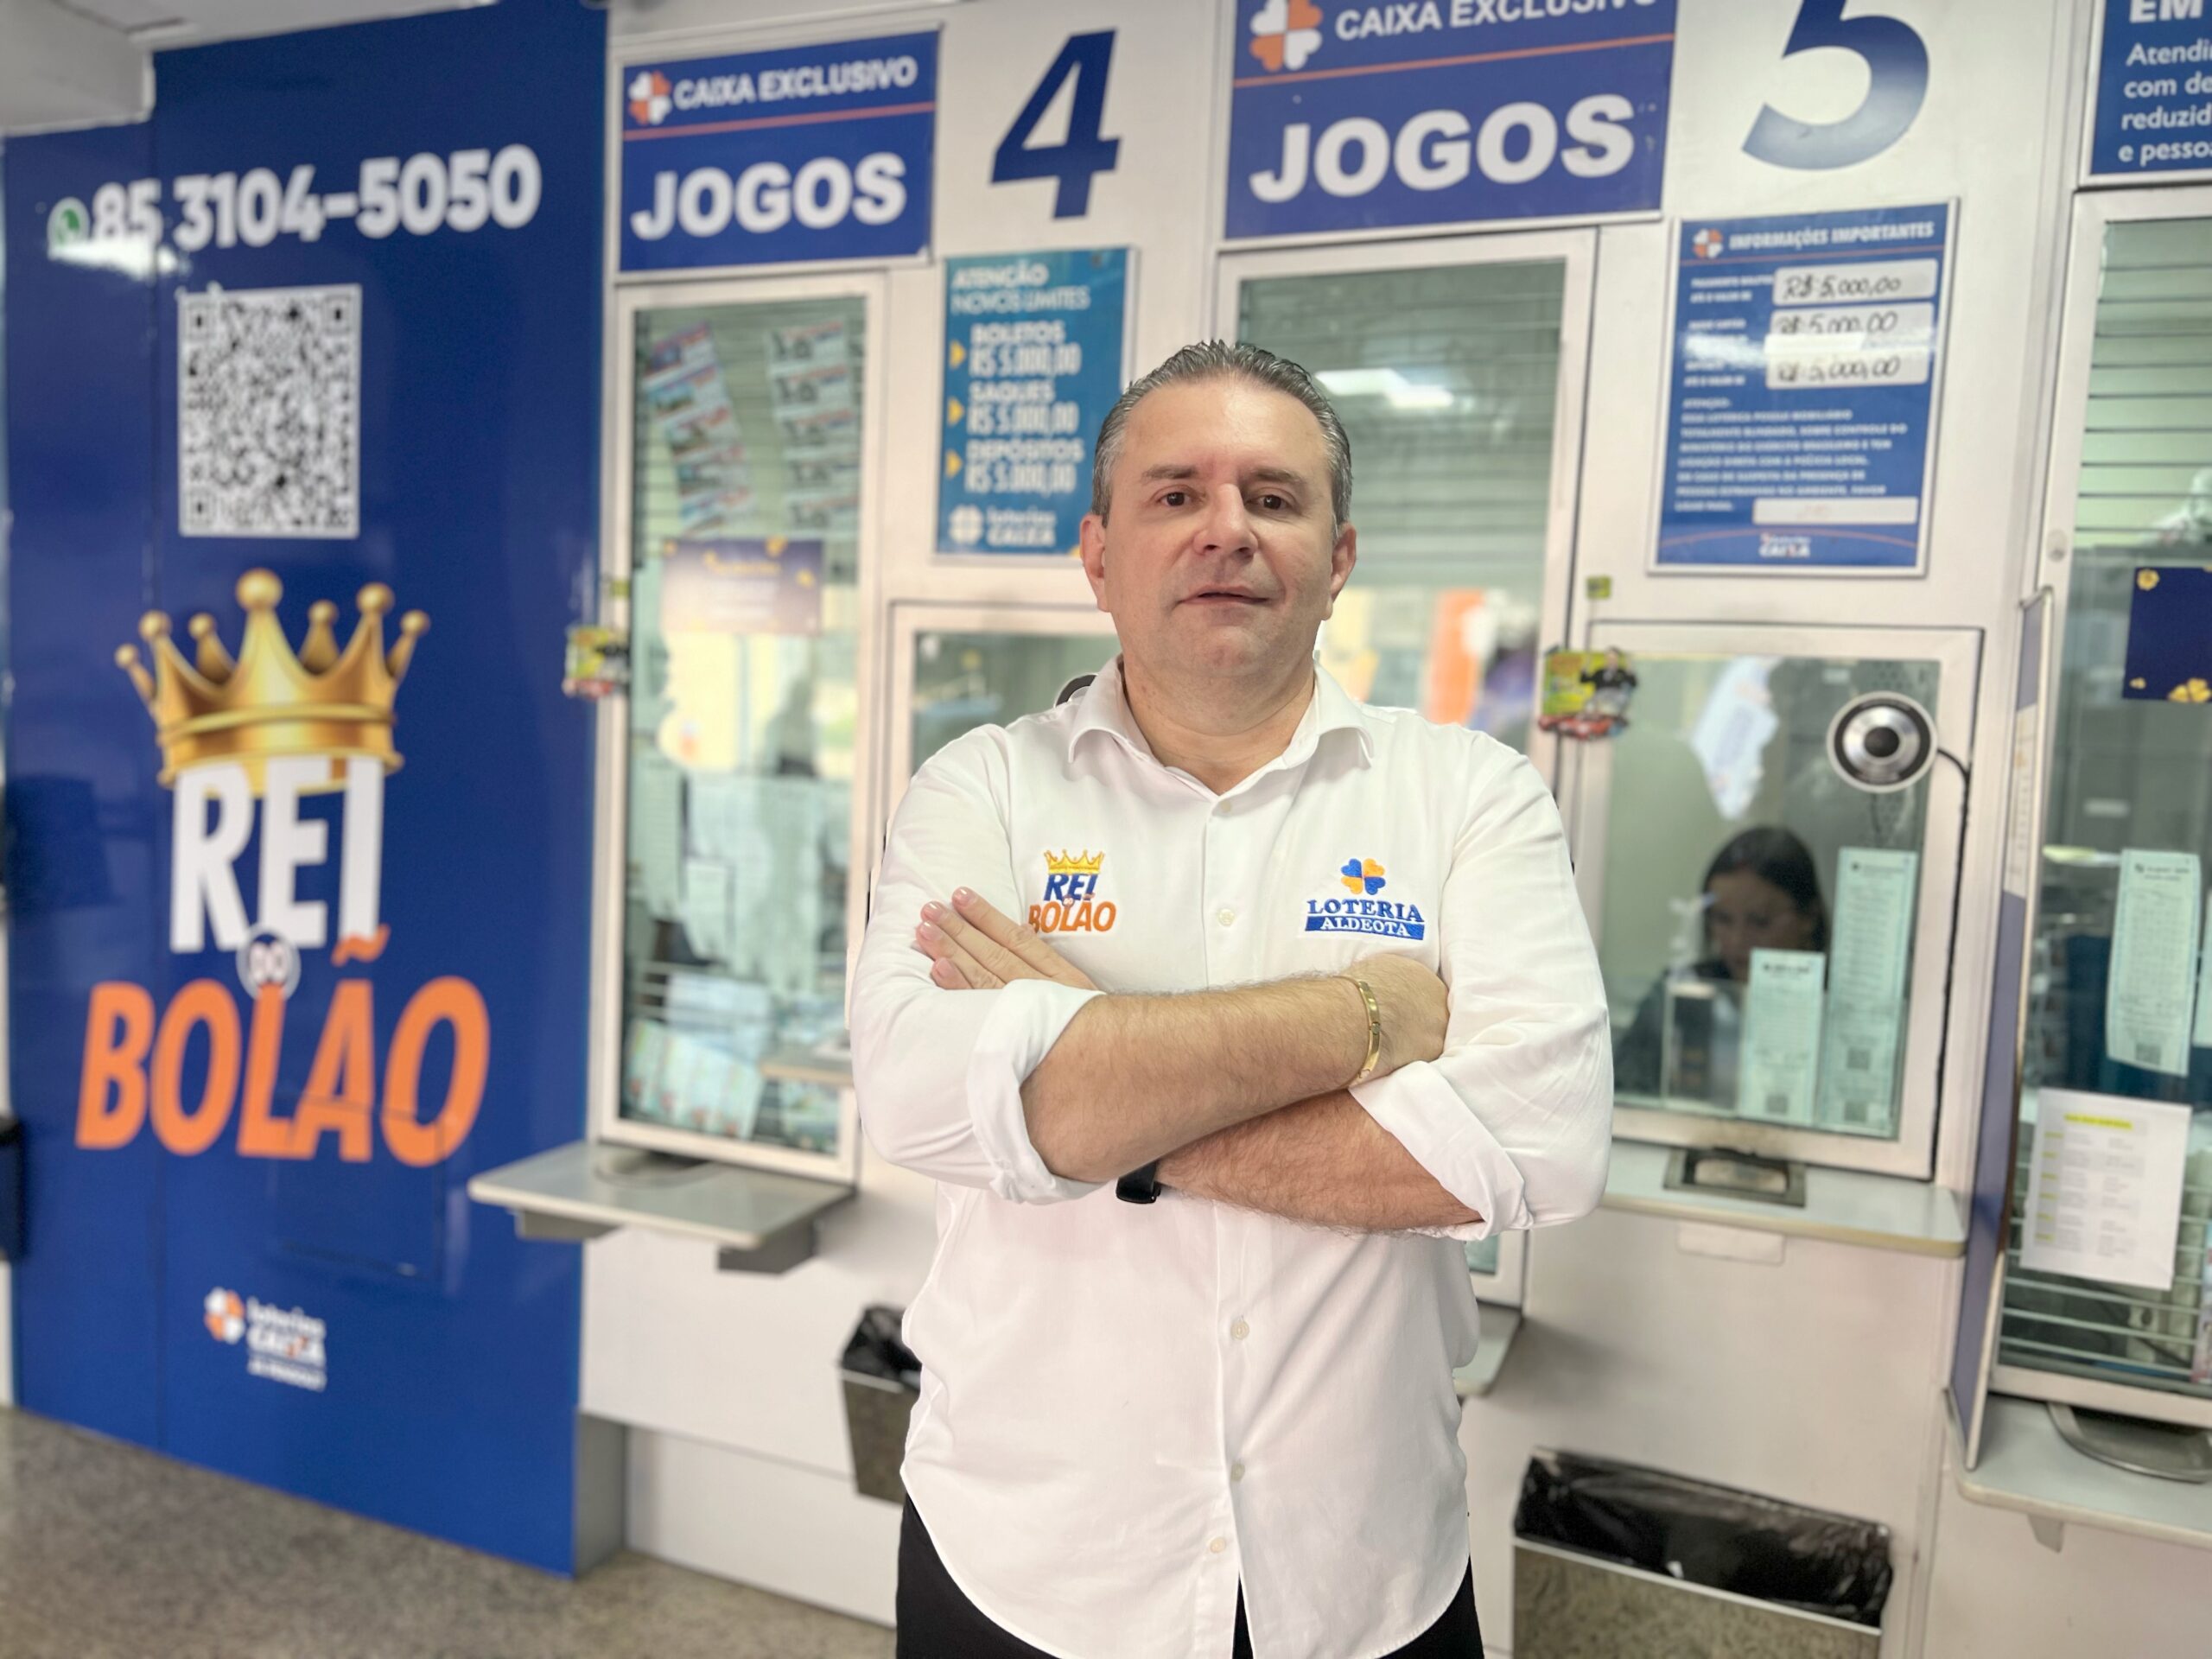 Lotérica de Fortaleza é a número 1 em vendas de bolões dos jogos das  loterias Caixa - Metro - Diário do Nordeste